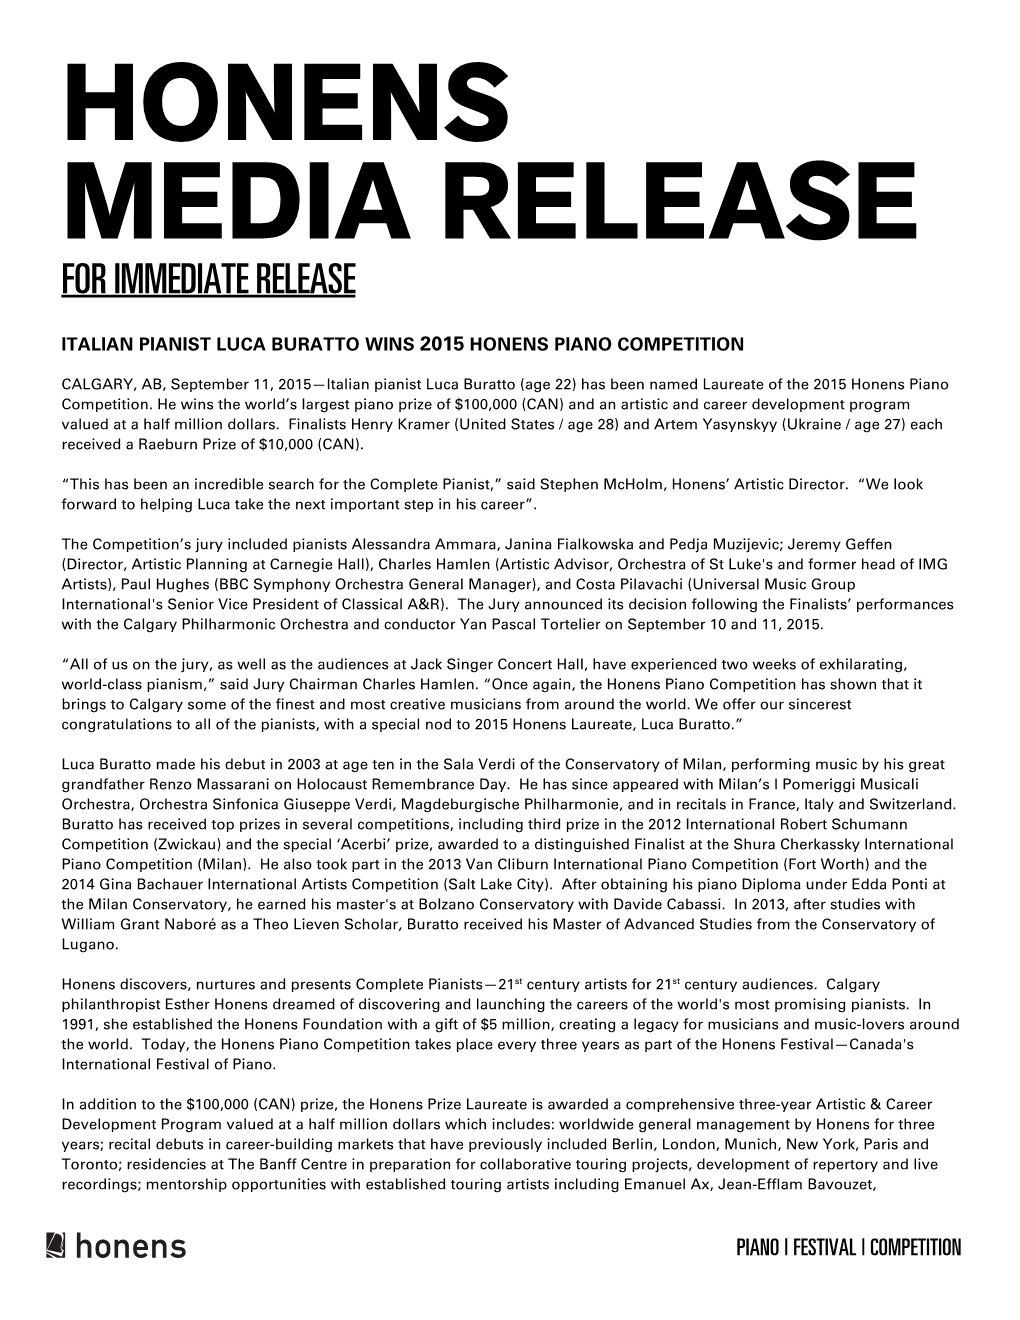 Honens Media Release for Immediate Release